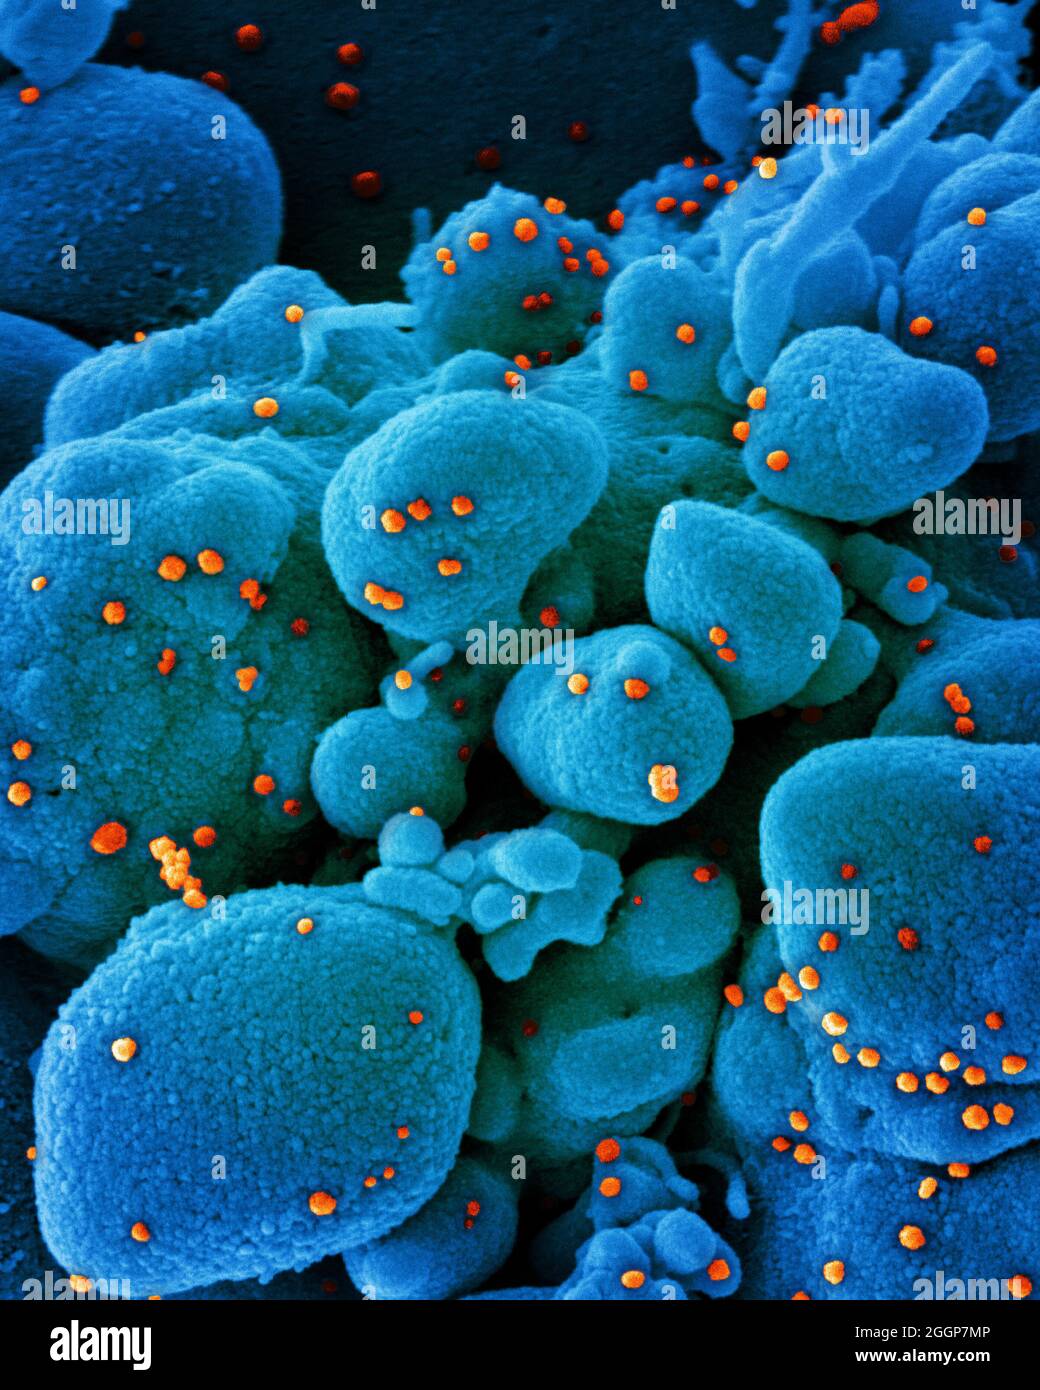 Micrografia elettronica a scansione colorata di una cellula apoptotica (blu) infettata con particelle di virus SARS-COV-2 (arancione), isolate da un campione di paziente. Foto Stock